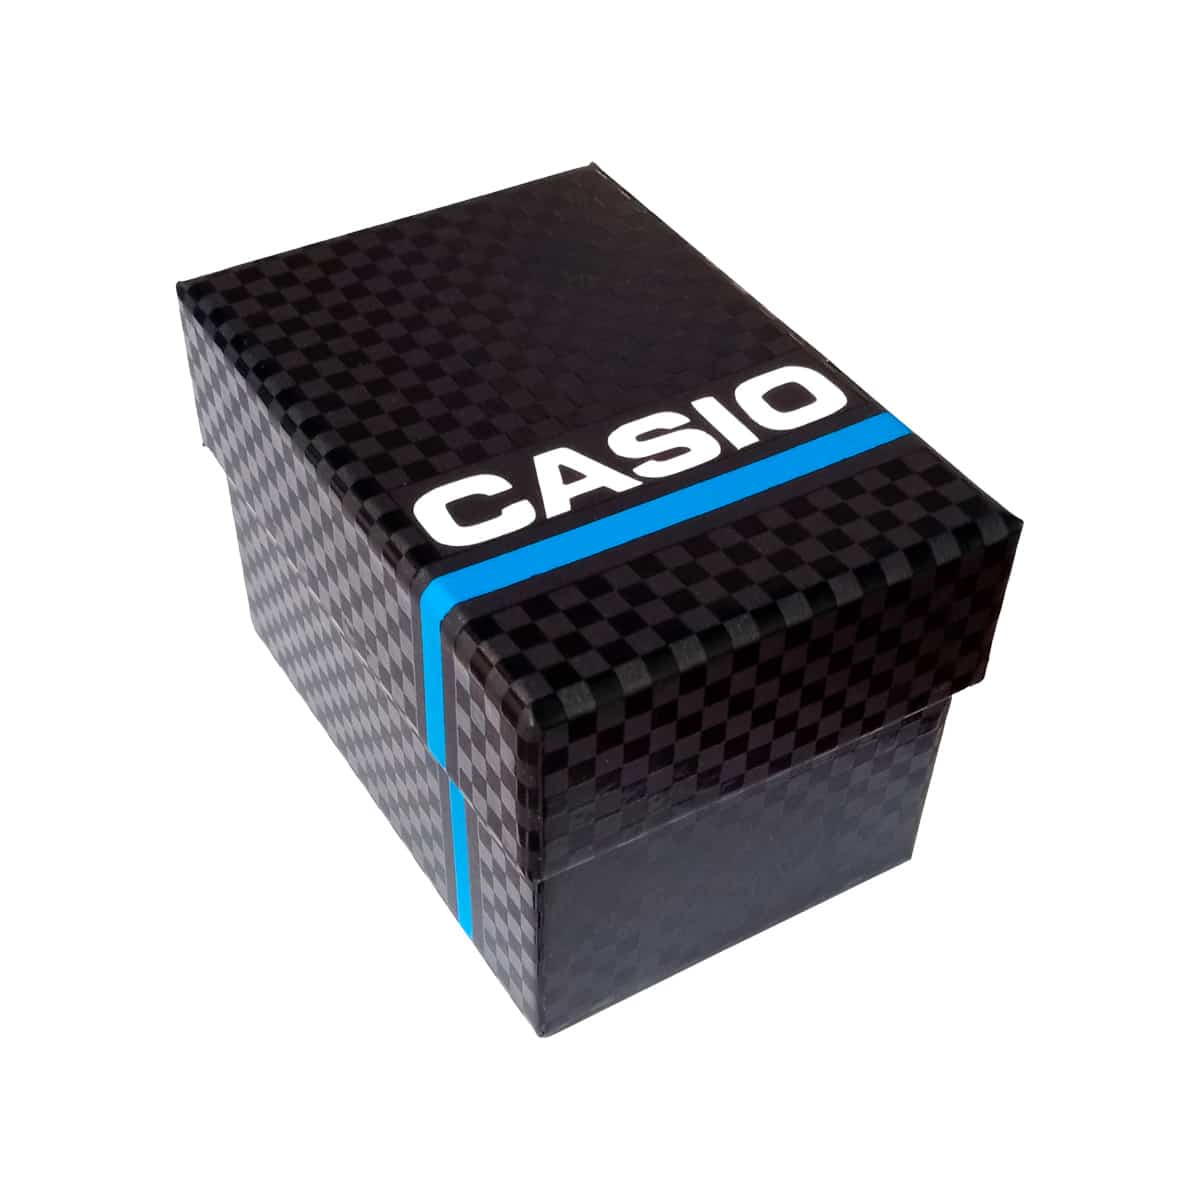 Est-Casio-2-1